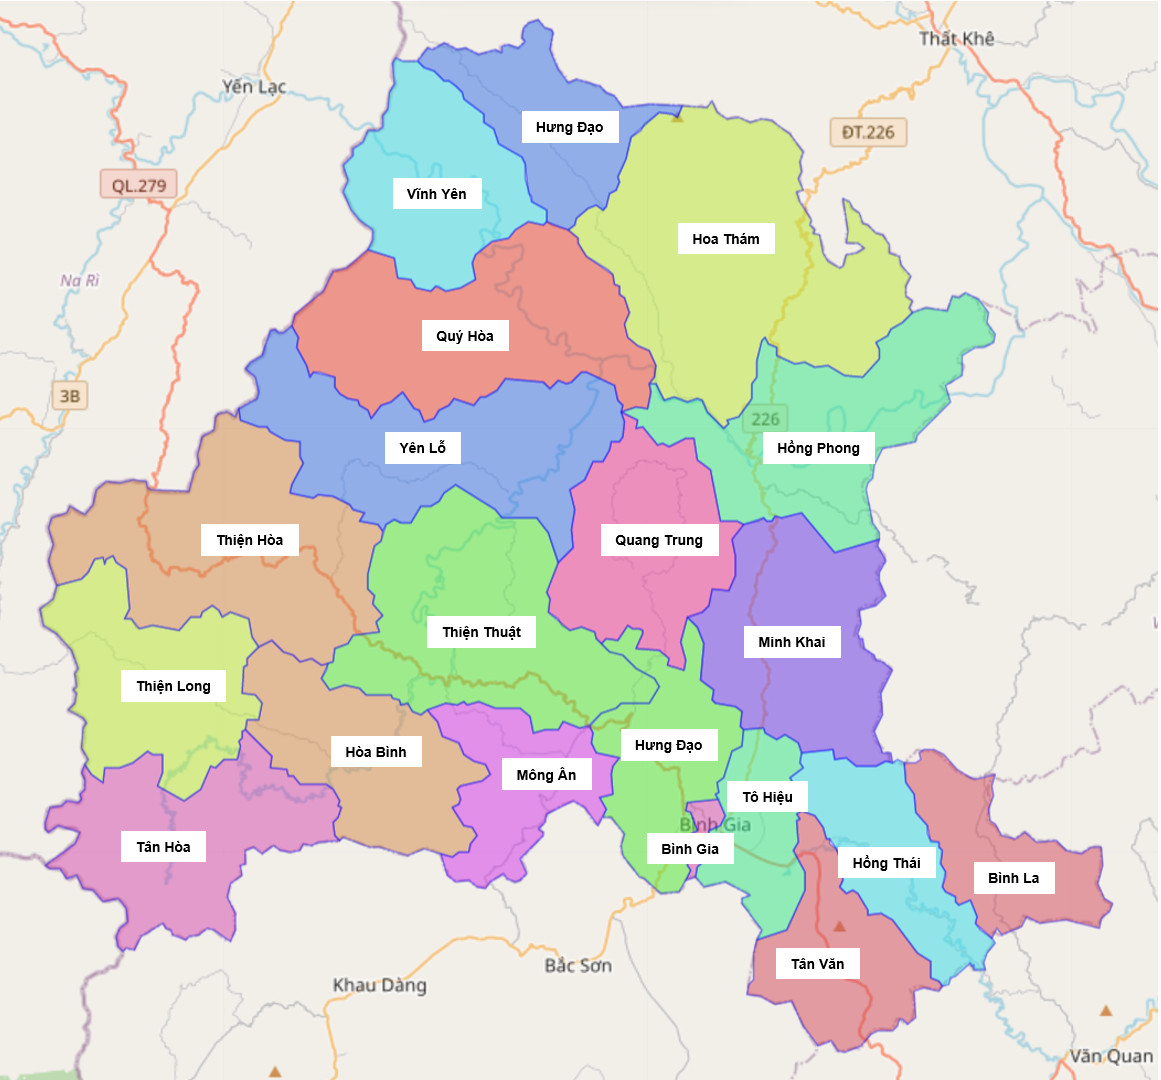 Cập nhật các thông tin về huyện Văn Quan - Lạng Sơn thông qua Drupal bản đồ năm